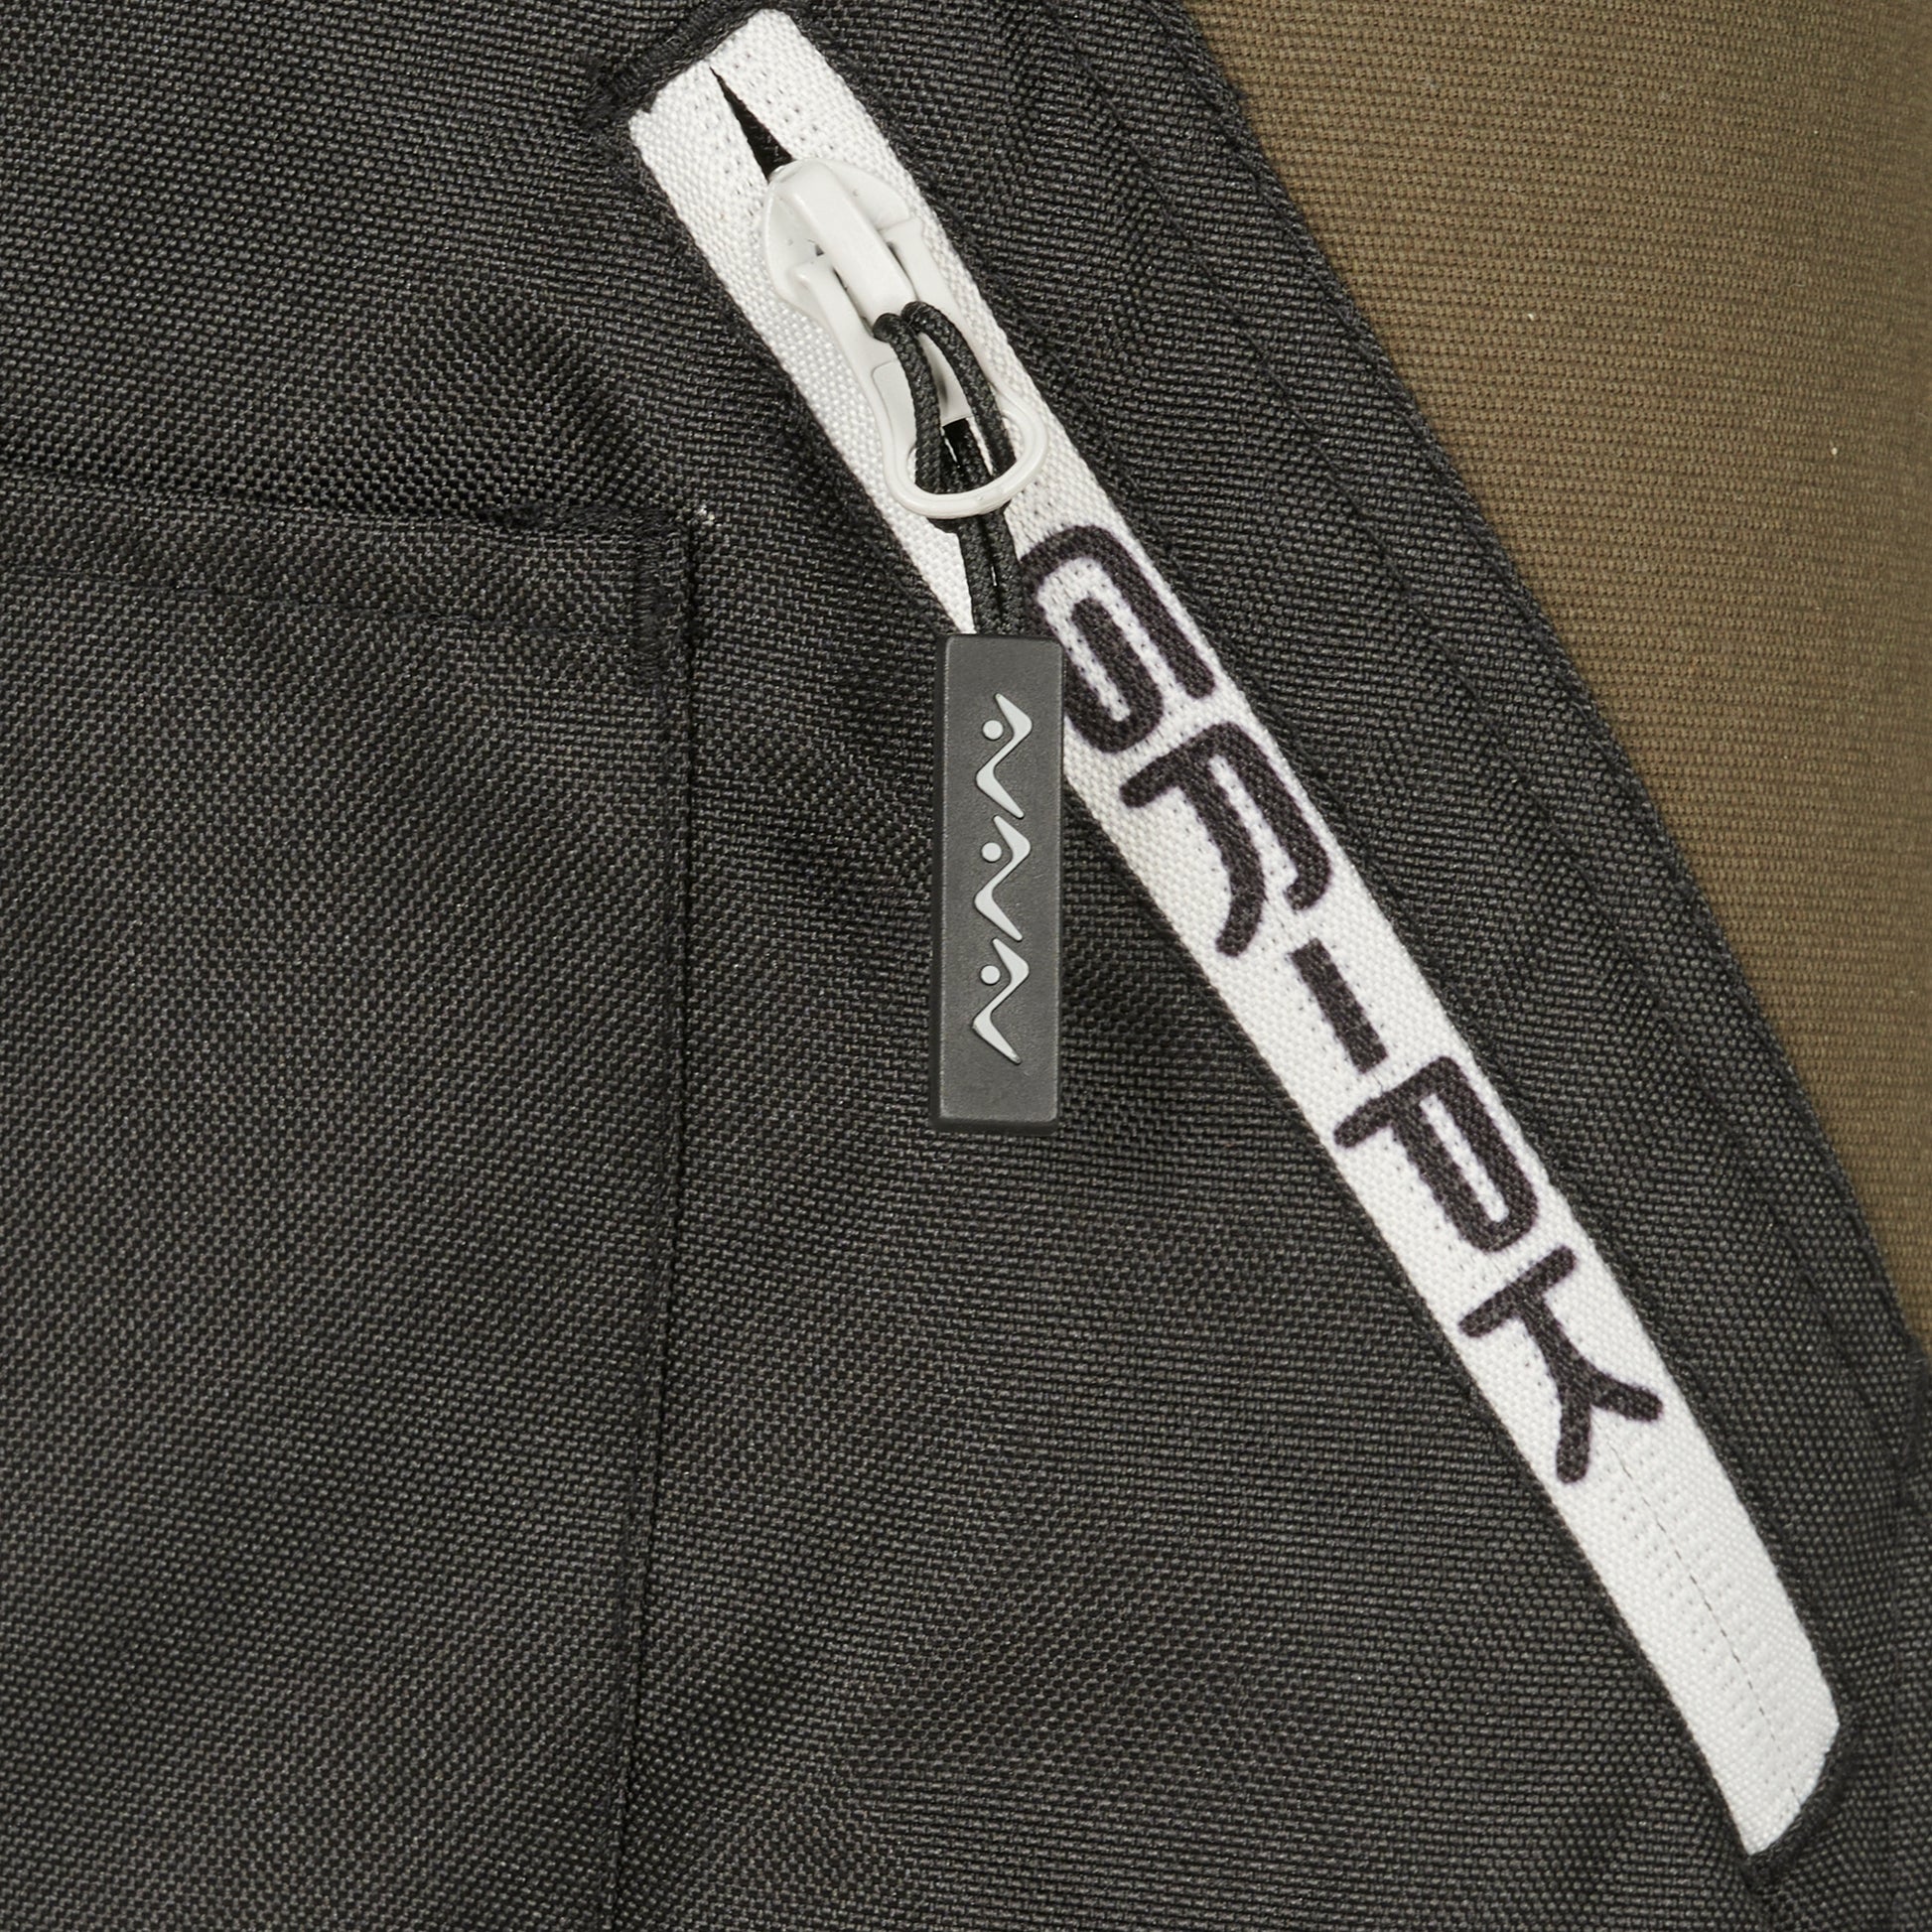 Pantalone da lavoro GRPK gr58 resistente e slim fit